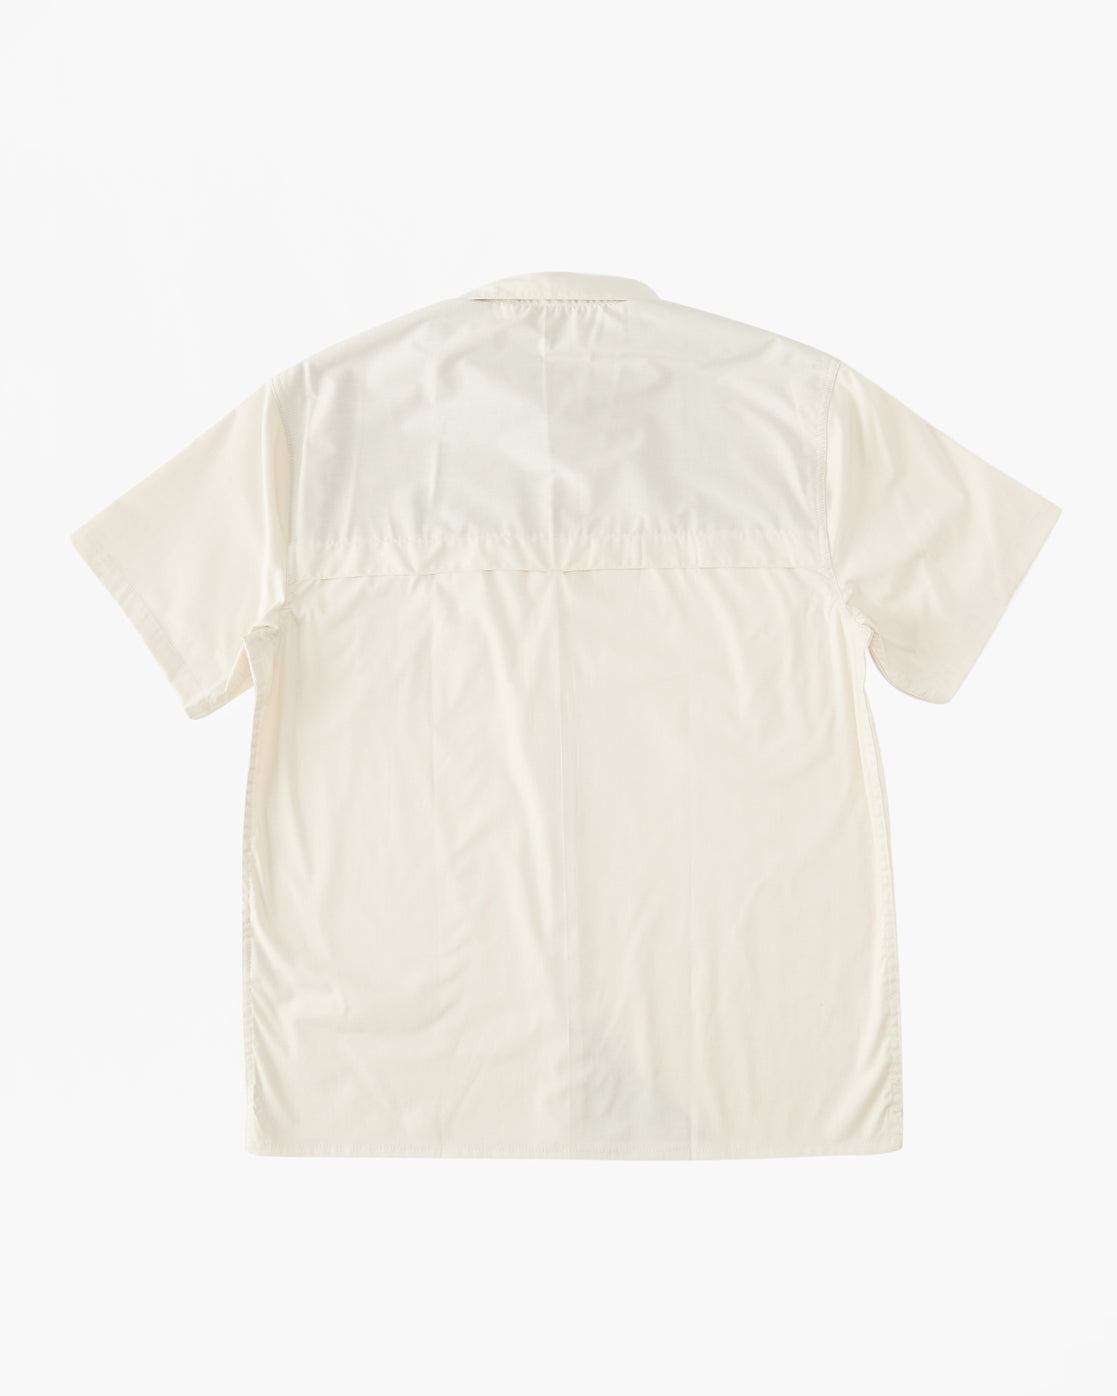 Billabong A/Div Surftrek Tech UPF 50+ Short Sleeve Shirt